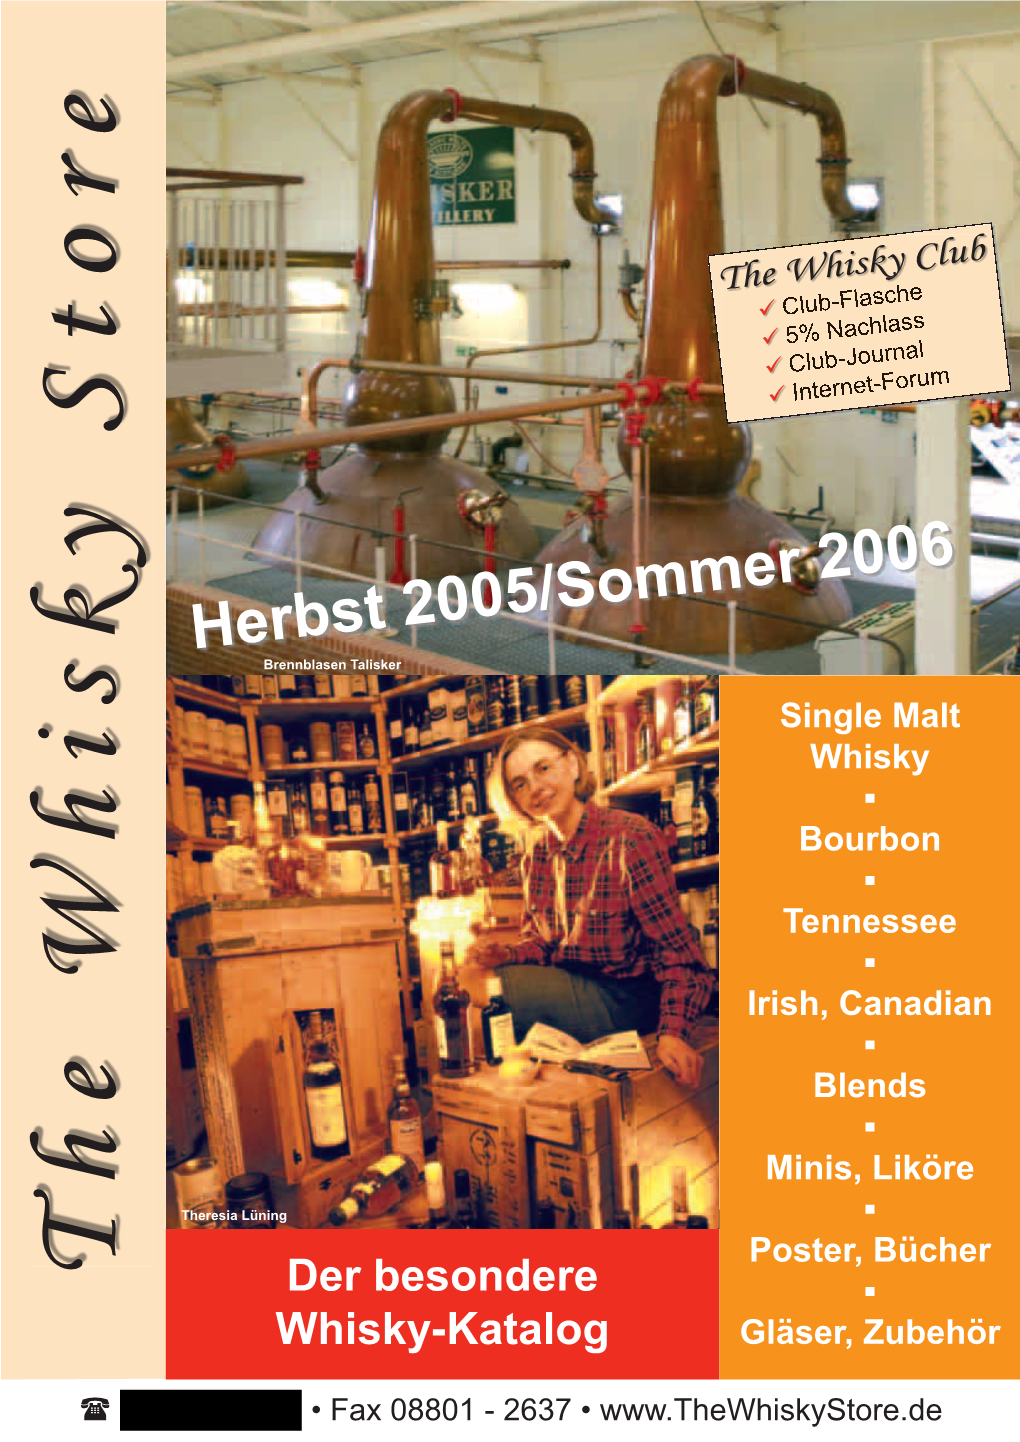 Herbst 2005/Sommer 2006 Brennblasen Talisker Single Malt Whisky � Bourbon � Tennessee � Irish, Canadian � Blends � Minis, Liköre